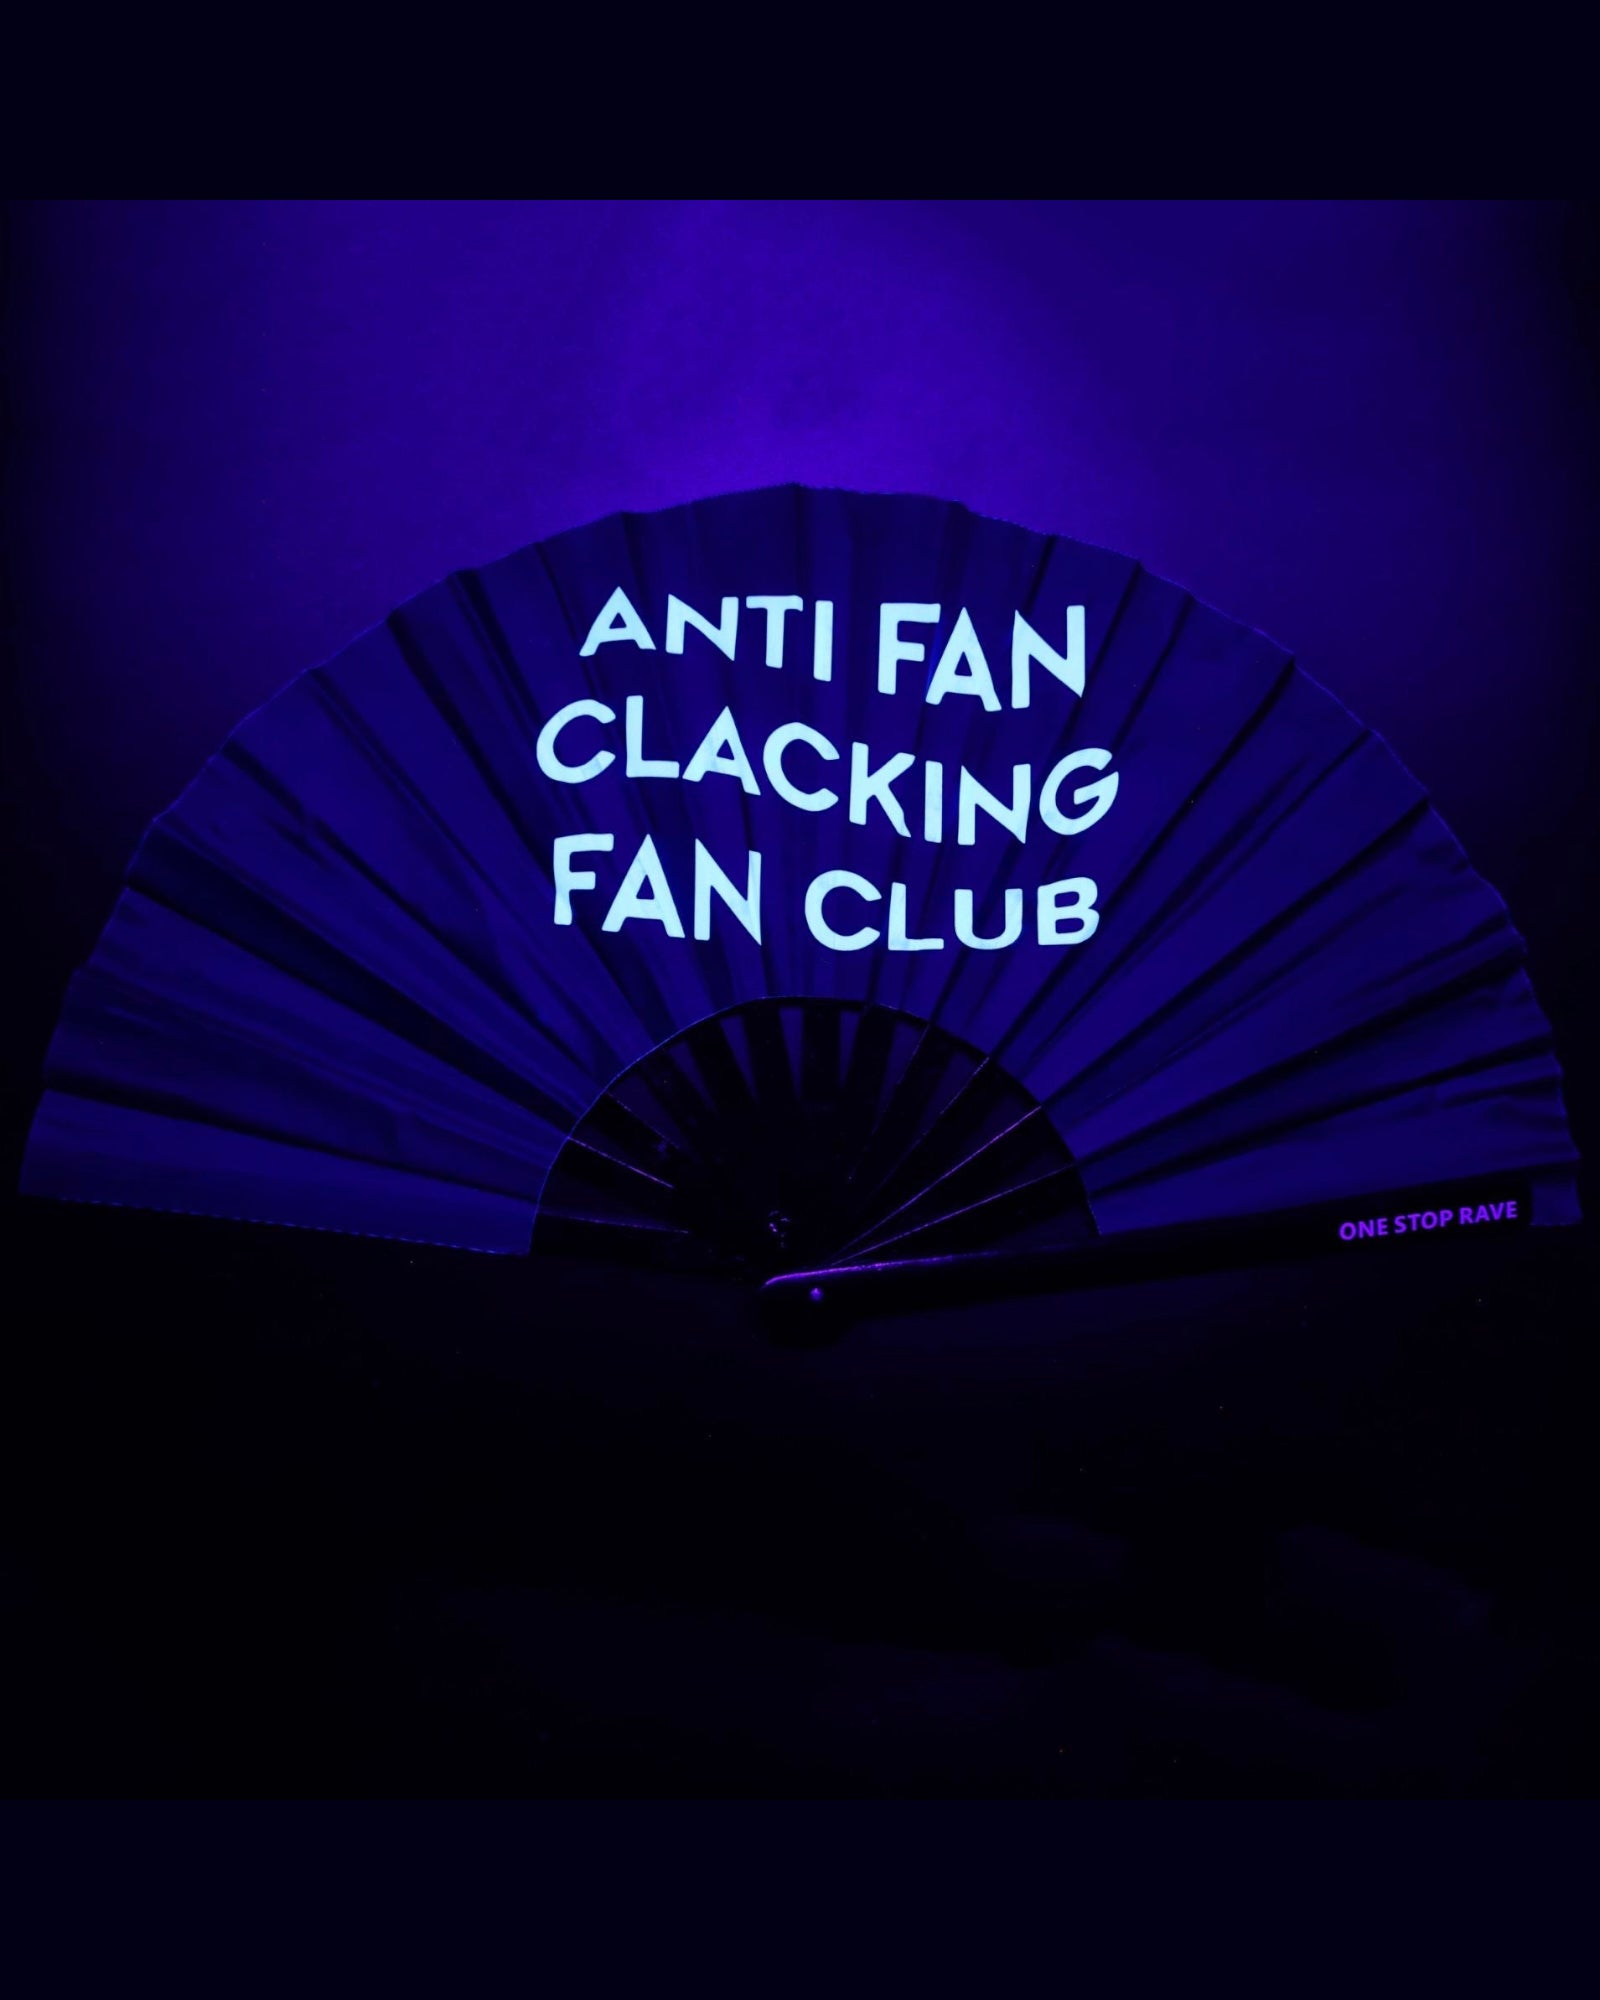 Anti Fan Clacking Fan Club Hand Fan, Festival Fans 13.5", - One Stop Rave